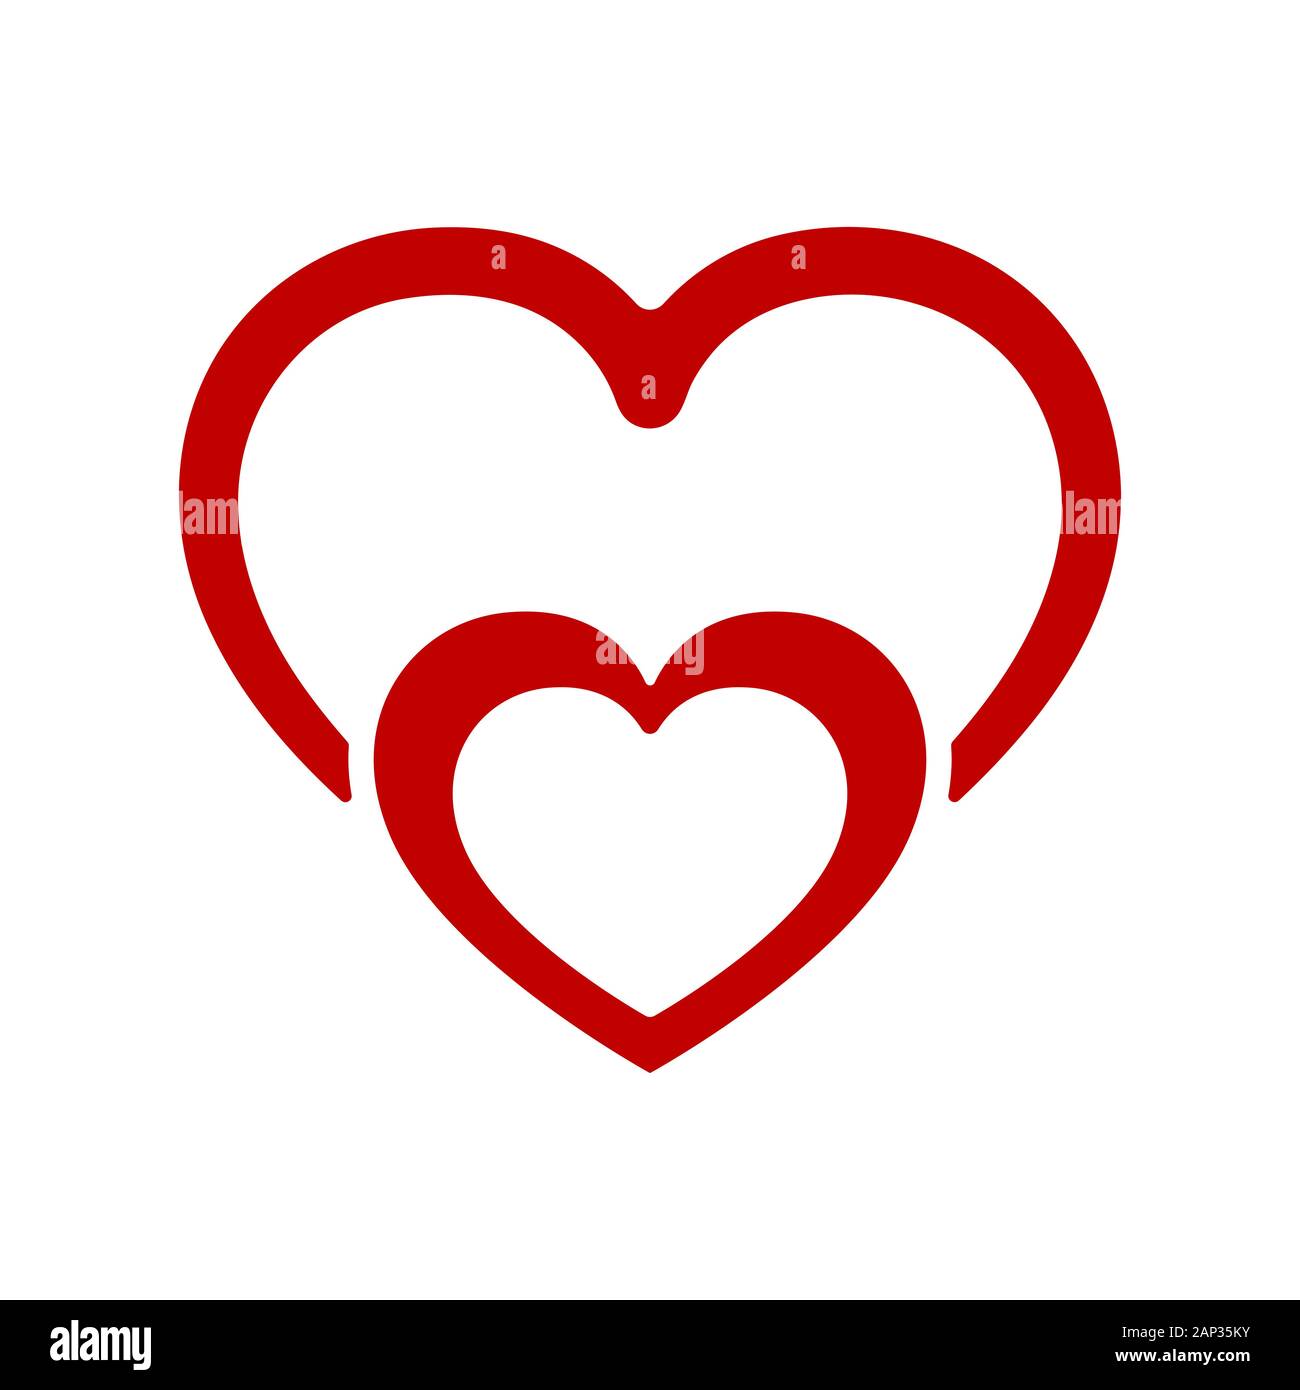 Image Of Heart Shape